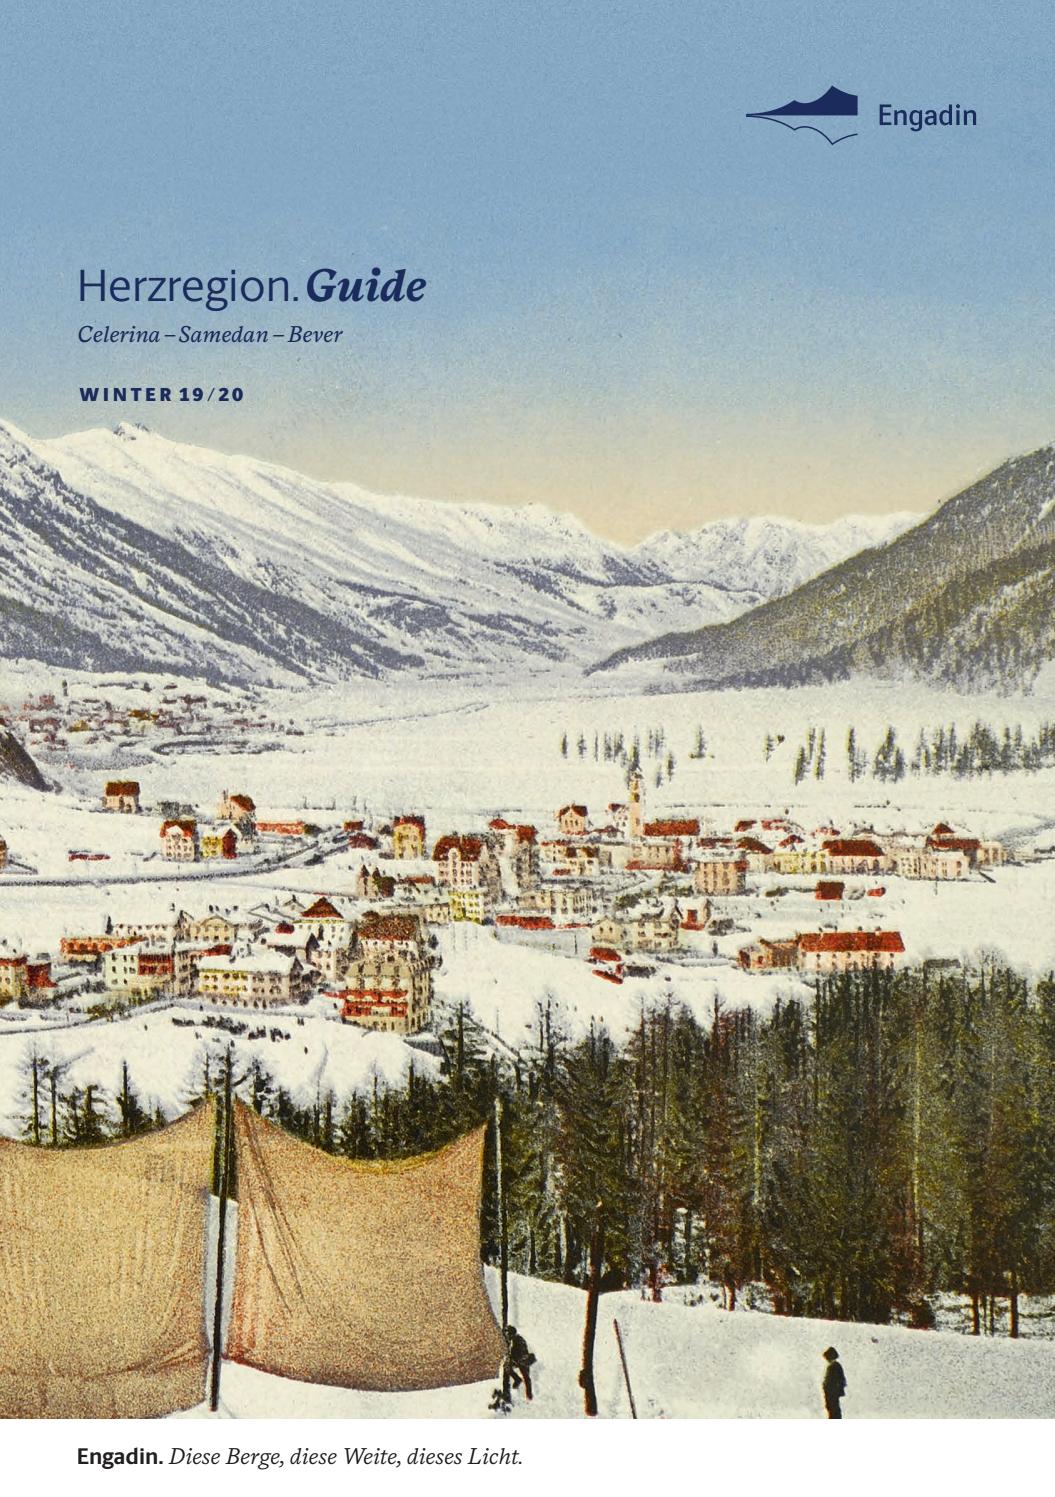 Dekobeleuchtung Garten Neu Engadin Guide Winter 2019 20 Herzregion by Engadin St